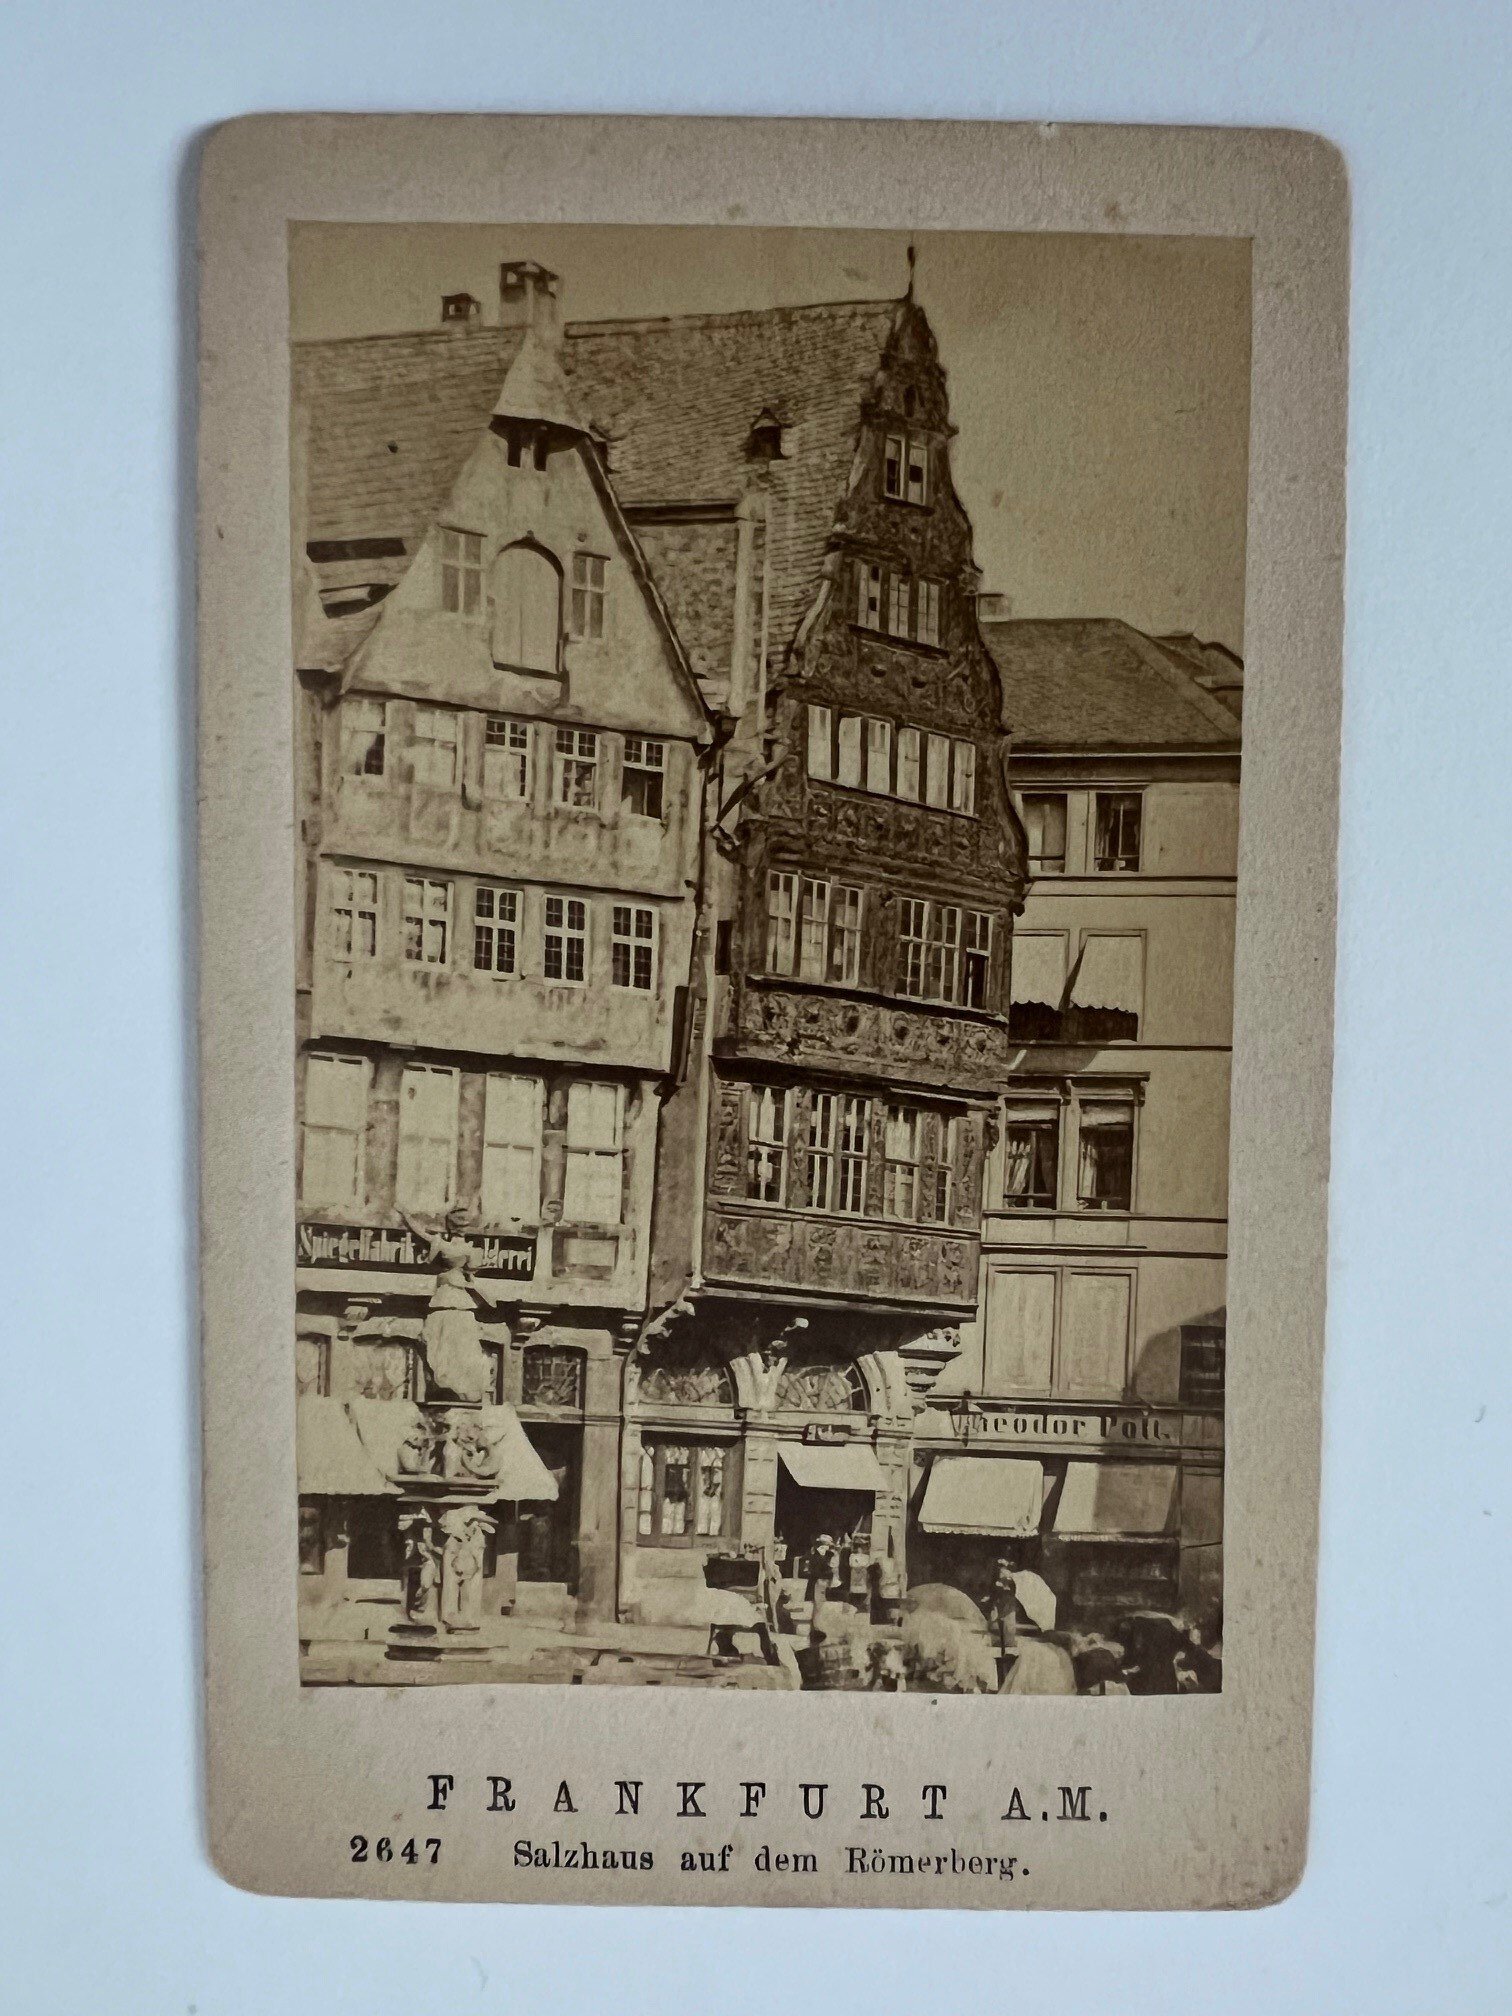 CdV, Unbekannter Fotograf, Frankfurt, Das Salzhaus auf dem Römerberg, ca. 1876. (Taunus-Rhein-Main - Regionalgeschichtliche Sammlung Dr. Stefan Naas CC BY-NC-SA)